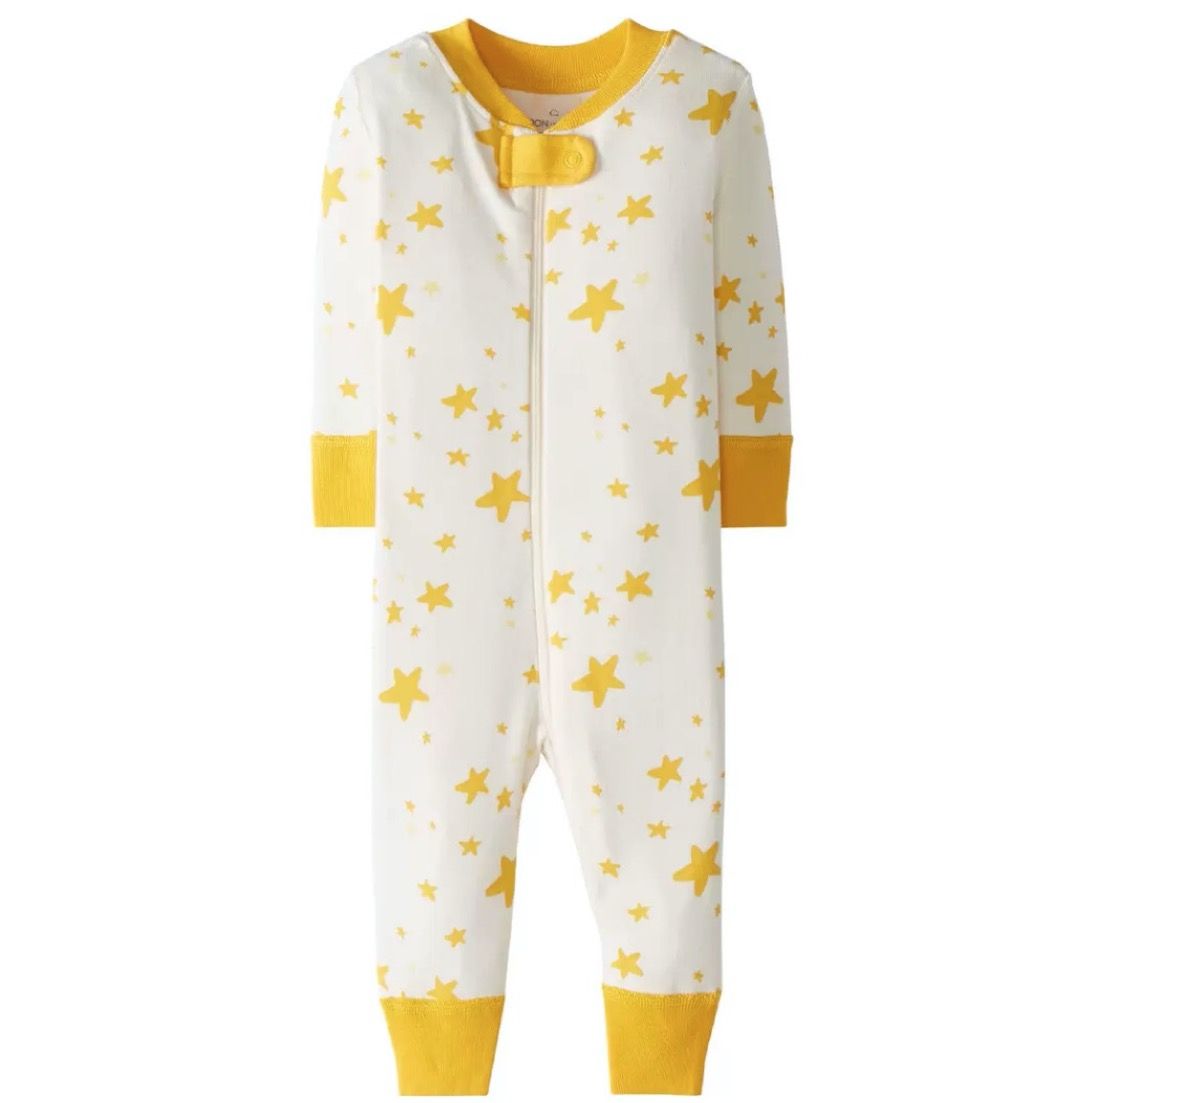 hvide og gule lynlås pyjamas med stjerner